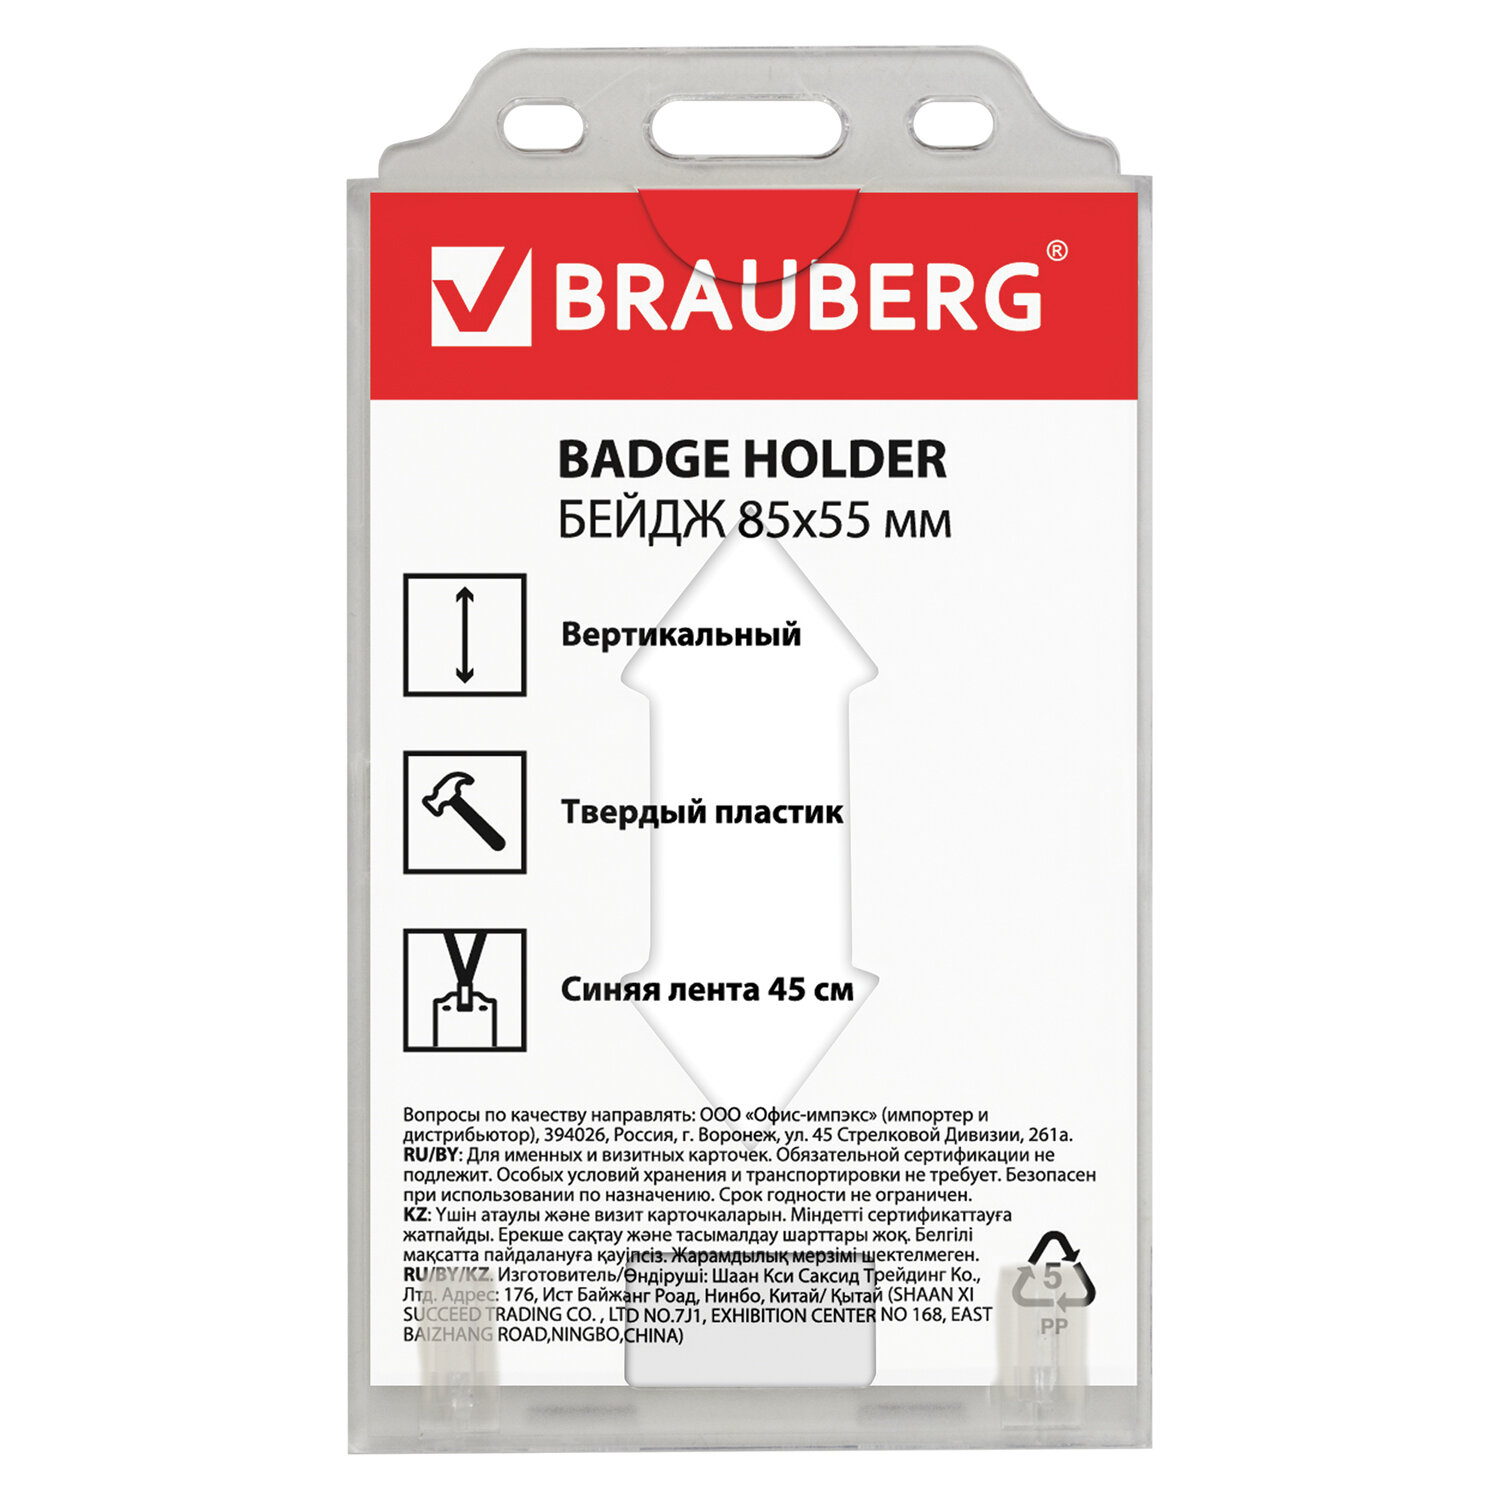 Бейдж BRAUBERG (БРАУБЕРГ), 84х55 мм, вертикальный, твердый пластик, на синей ленте 45 см